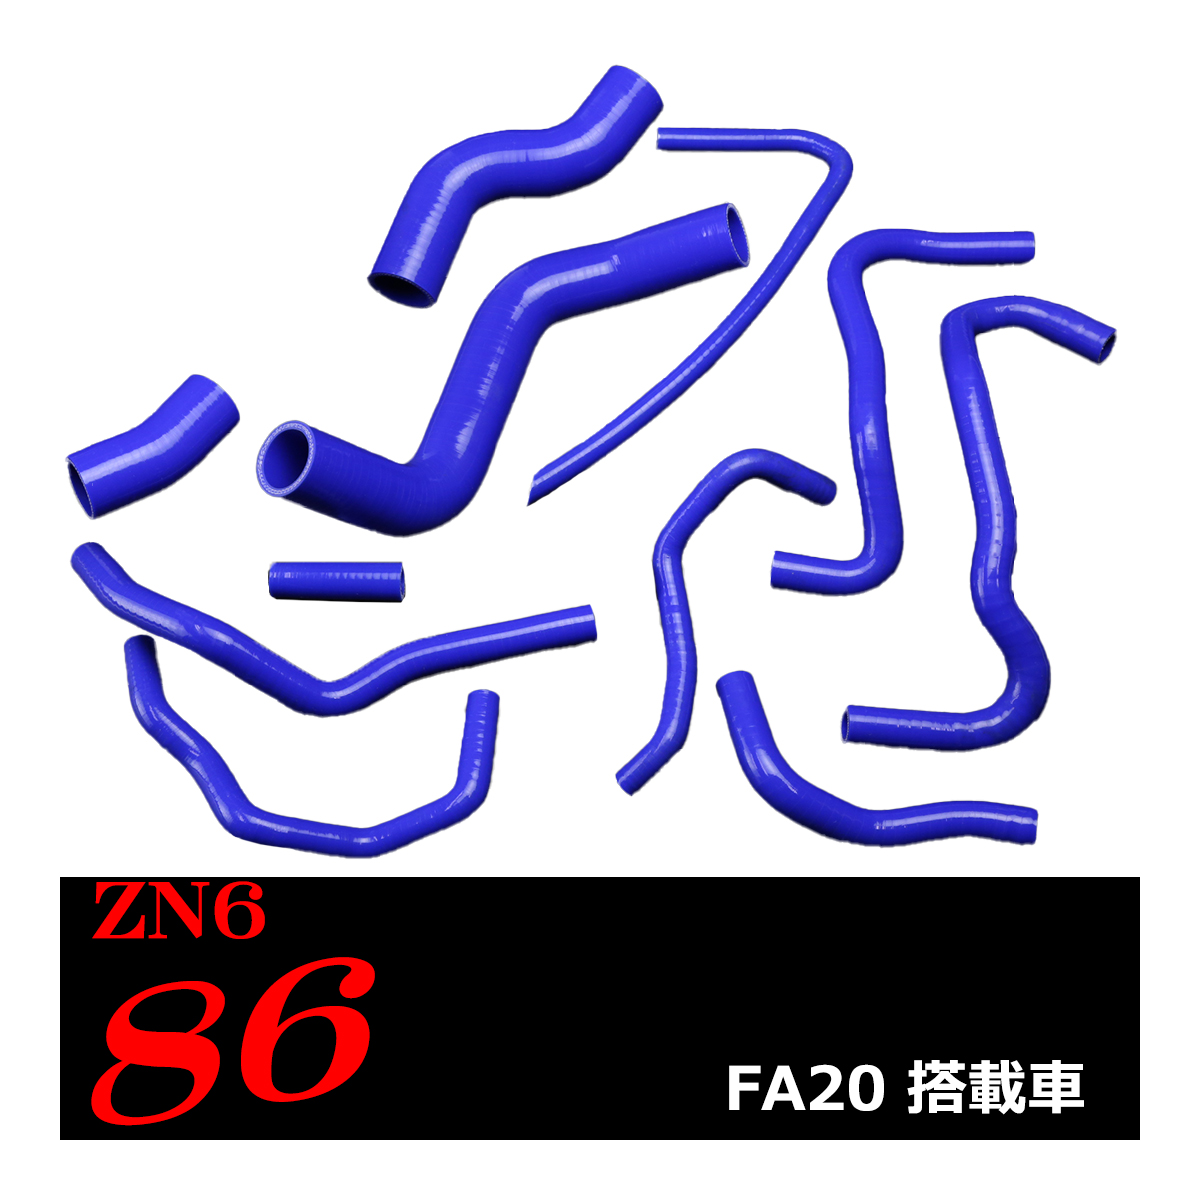 トヨタ ZN6 86/ハチロク シリコンホースキット 11点セット FA20 3PLY